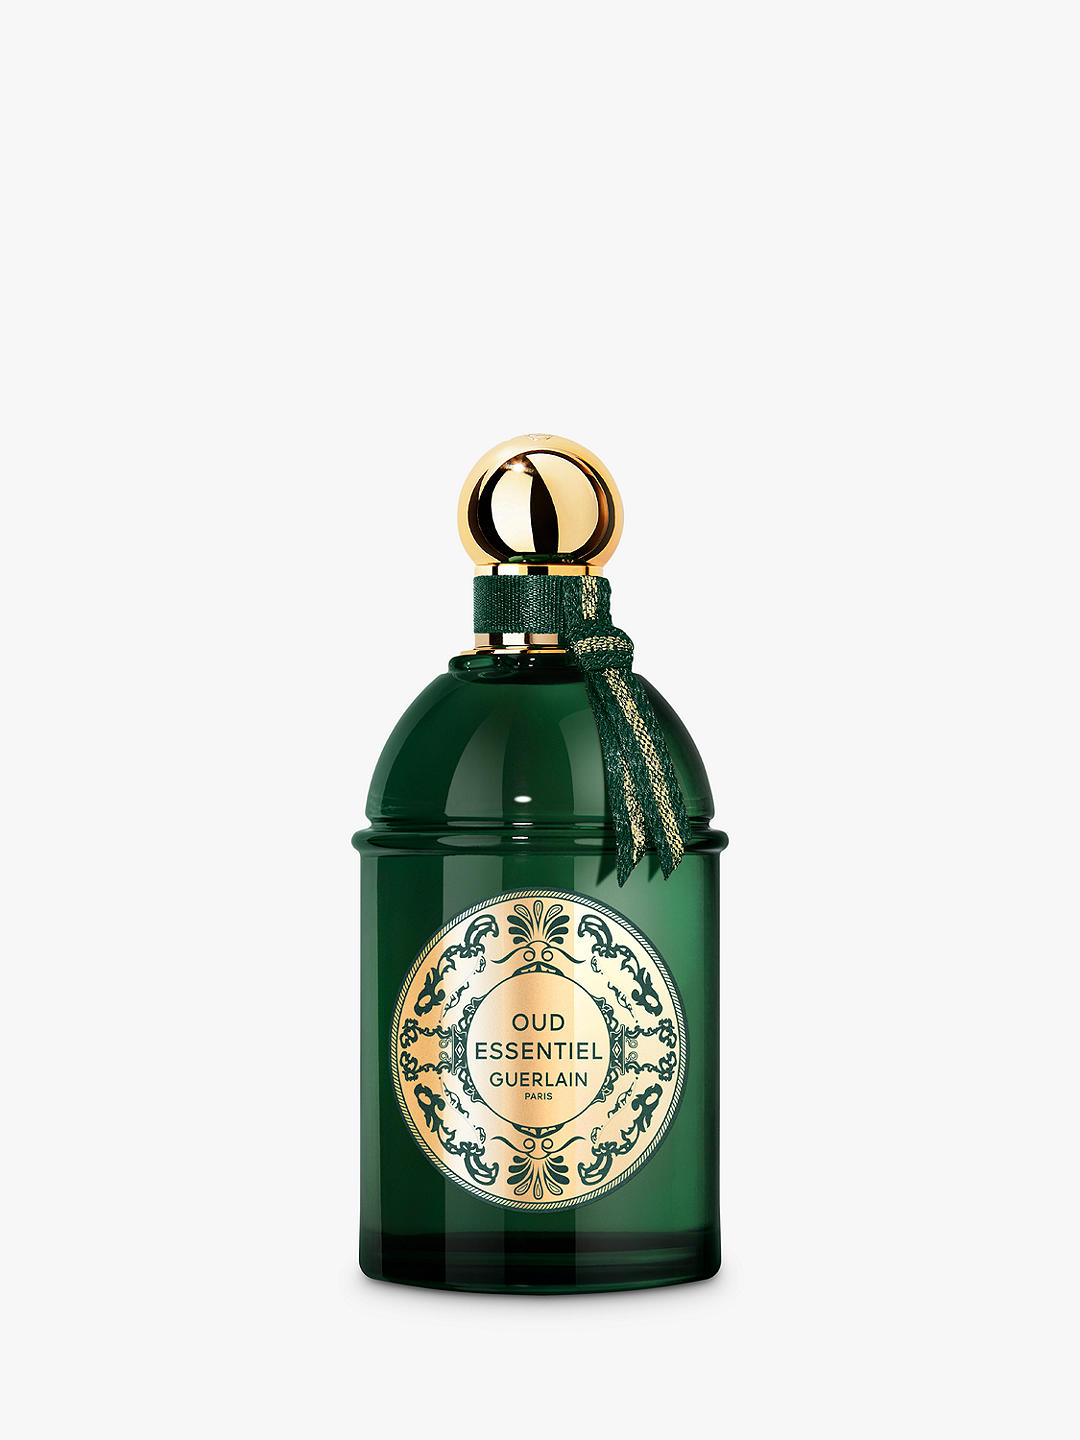 Guerlain Les Absolus d'Orient Oud Essentiel Eau de Parfum, 125ml 1